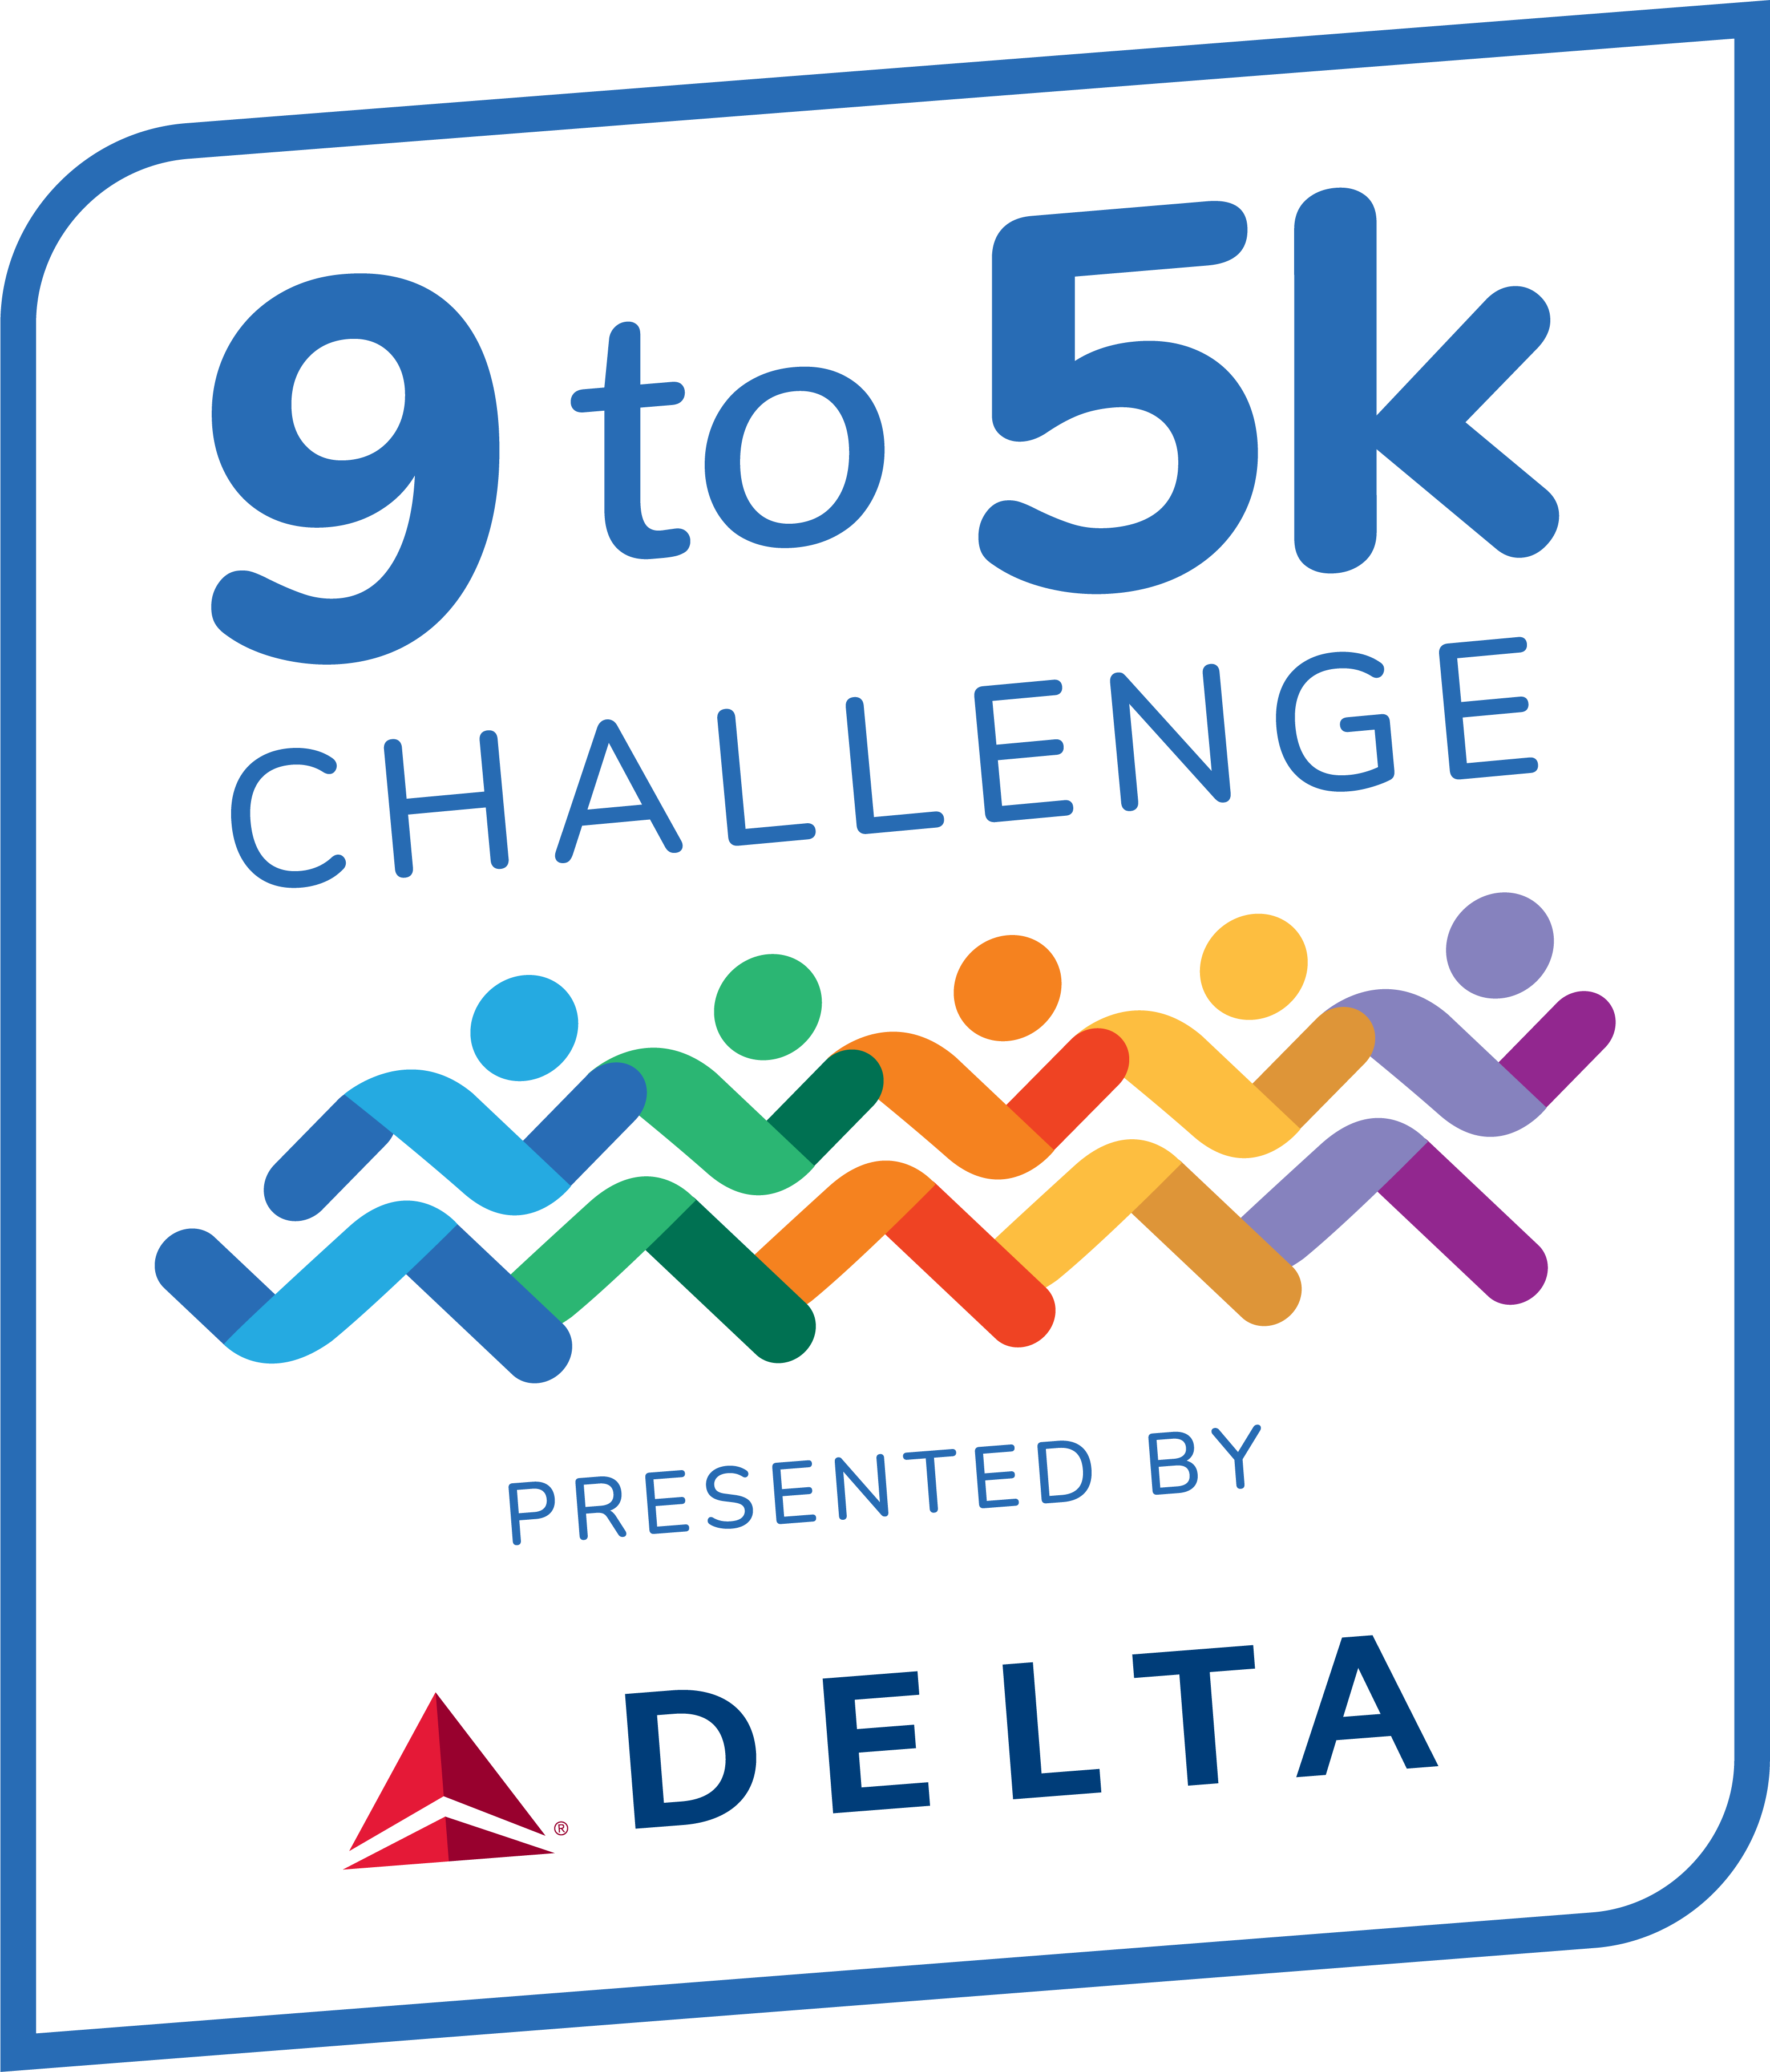 9 to 5k Challenge Logo CMYK - v2